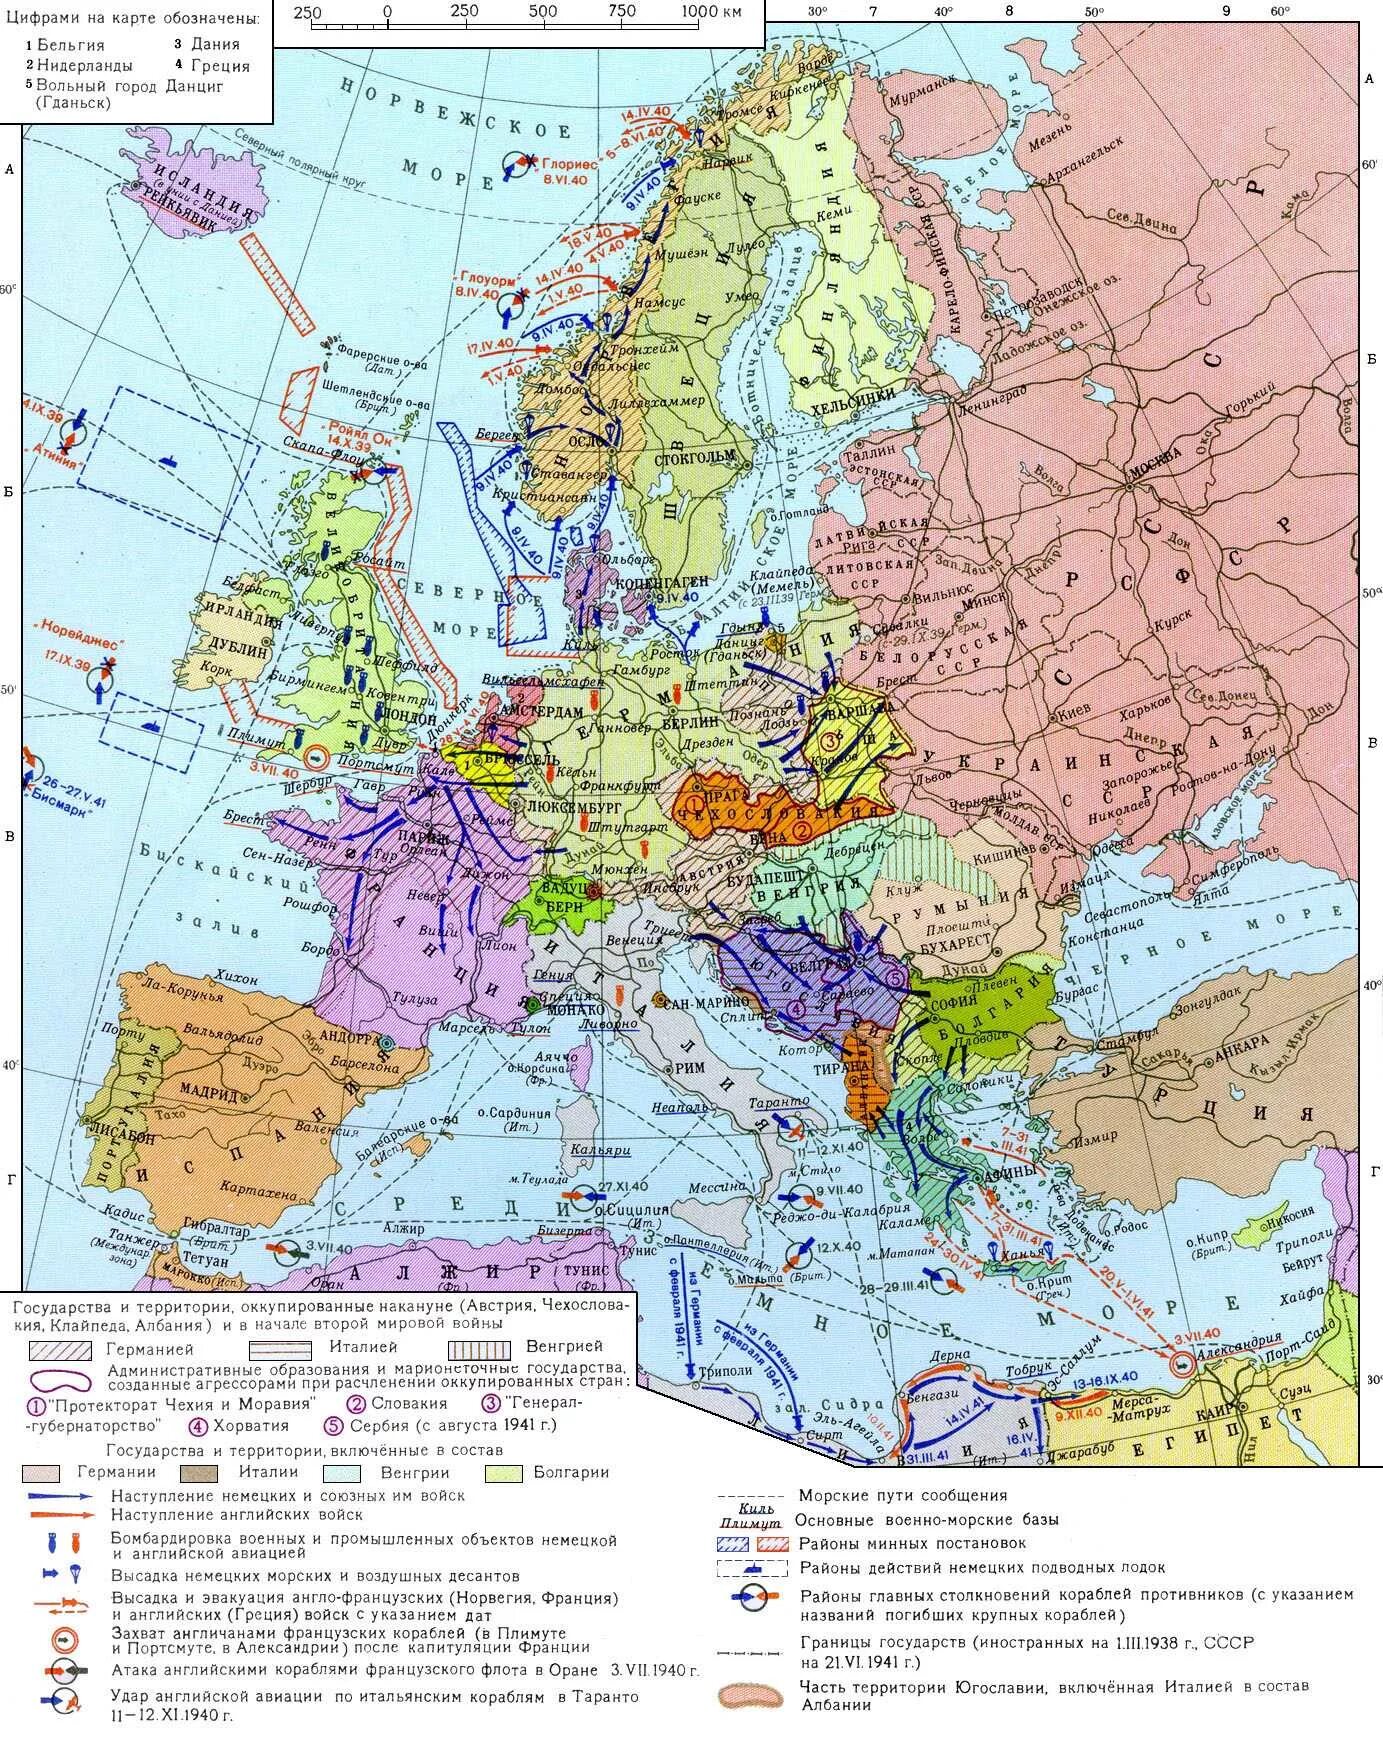 Какие страны захватила германия к 1940. Карта второй мировой войны 1939-1945. Карта второй мировой 1939. Карта Европы на начало второй мировой войны.